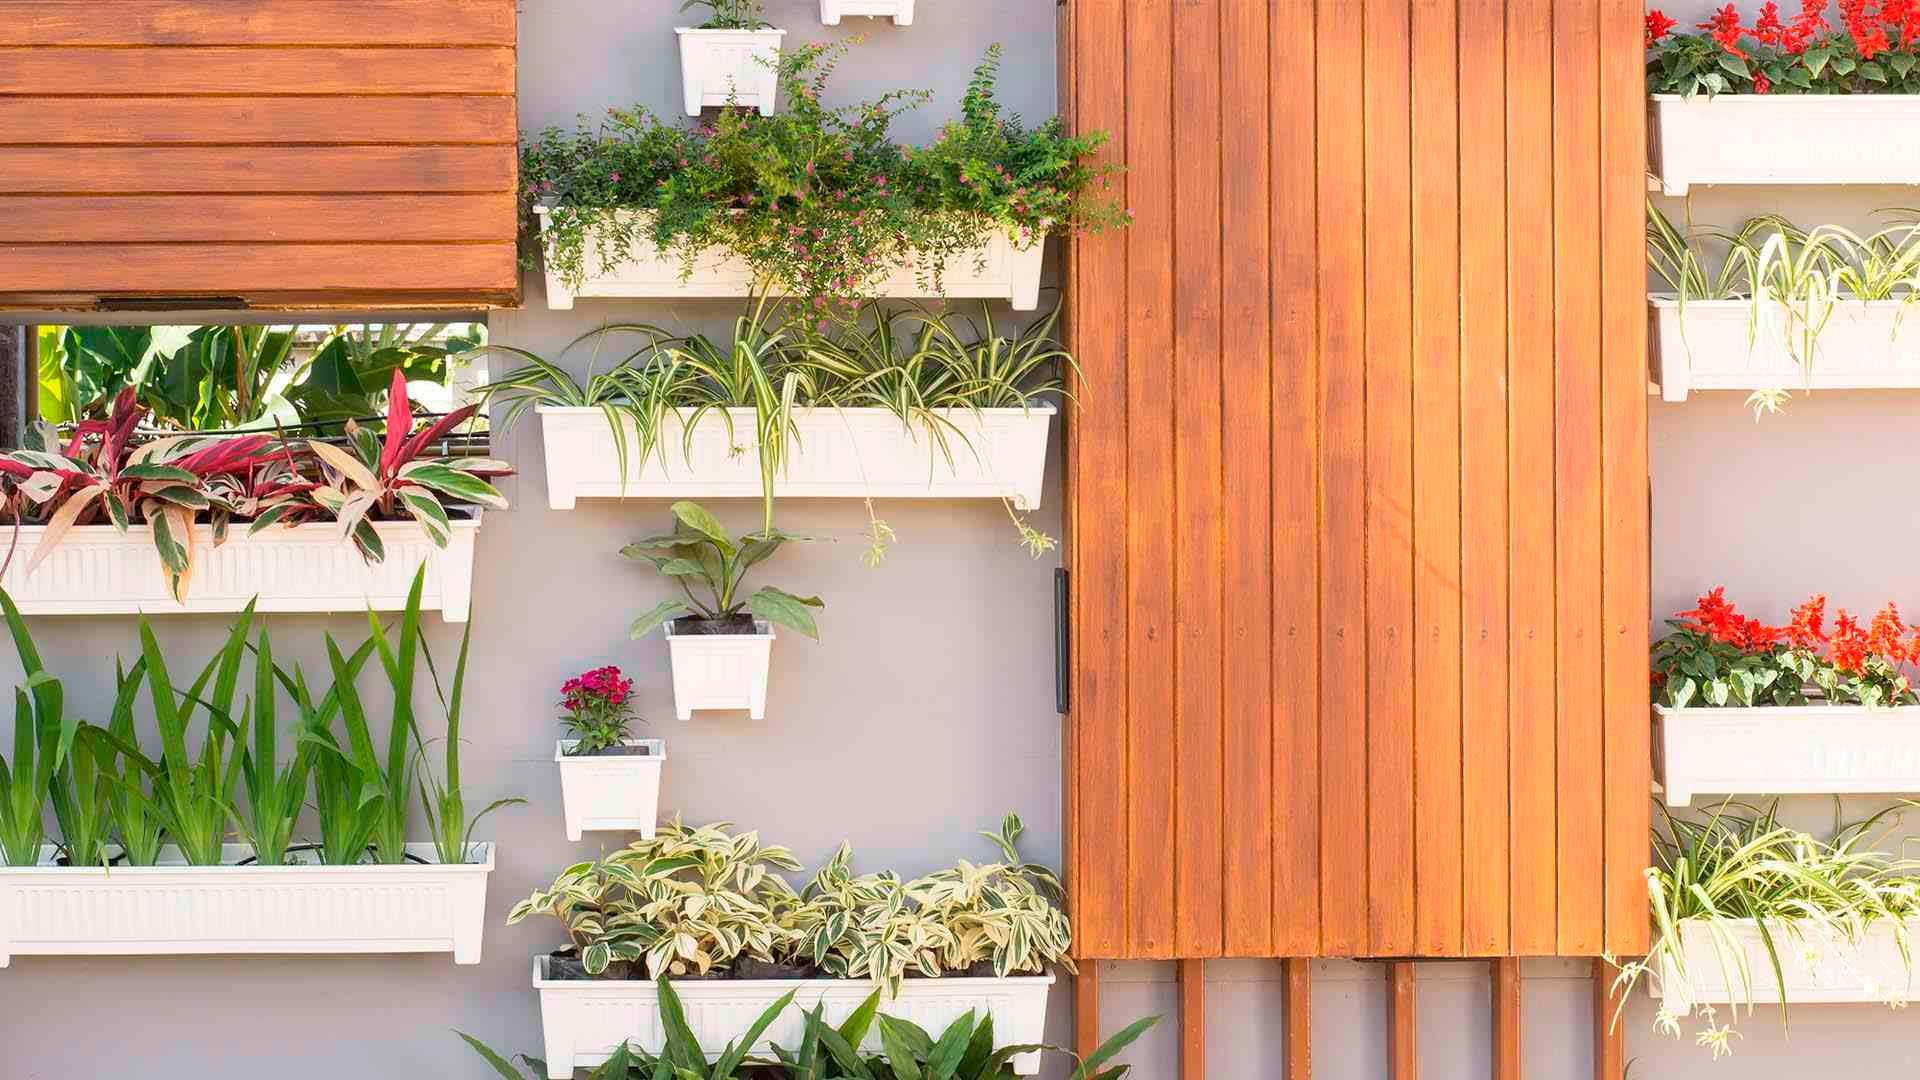 Terraza + jardín vertical exterior: Con estos consejos arma tu espacio perfecto.